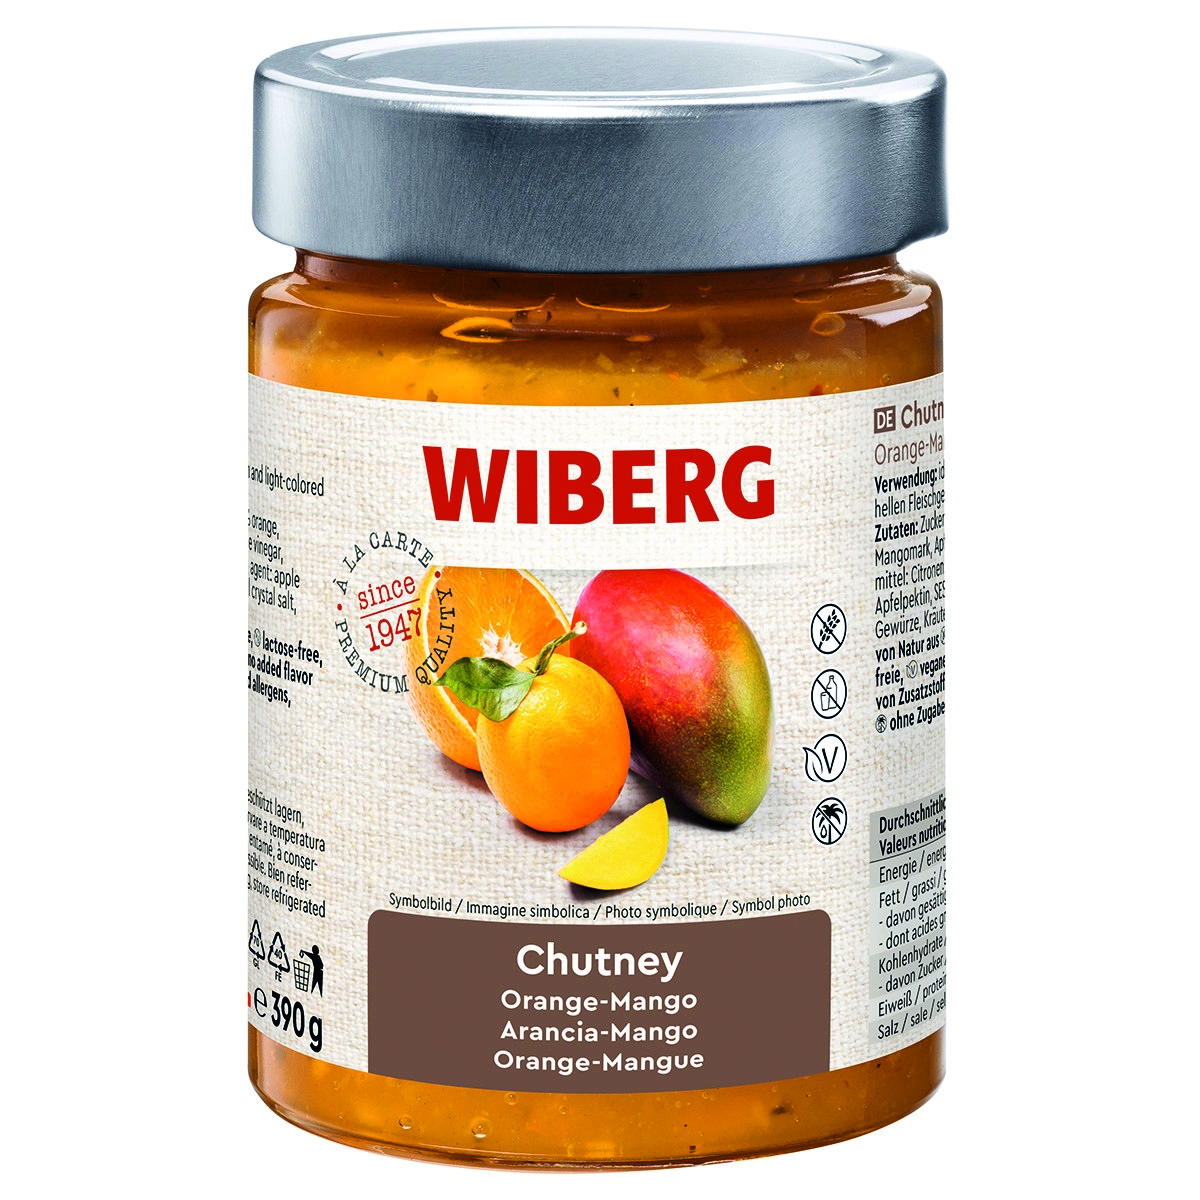 WIBERG Chutney Orange-Mango